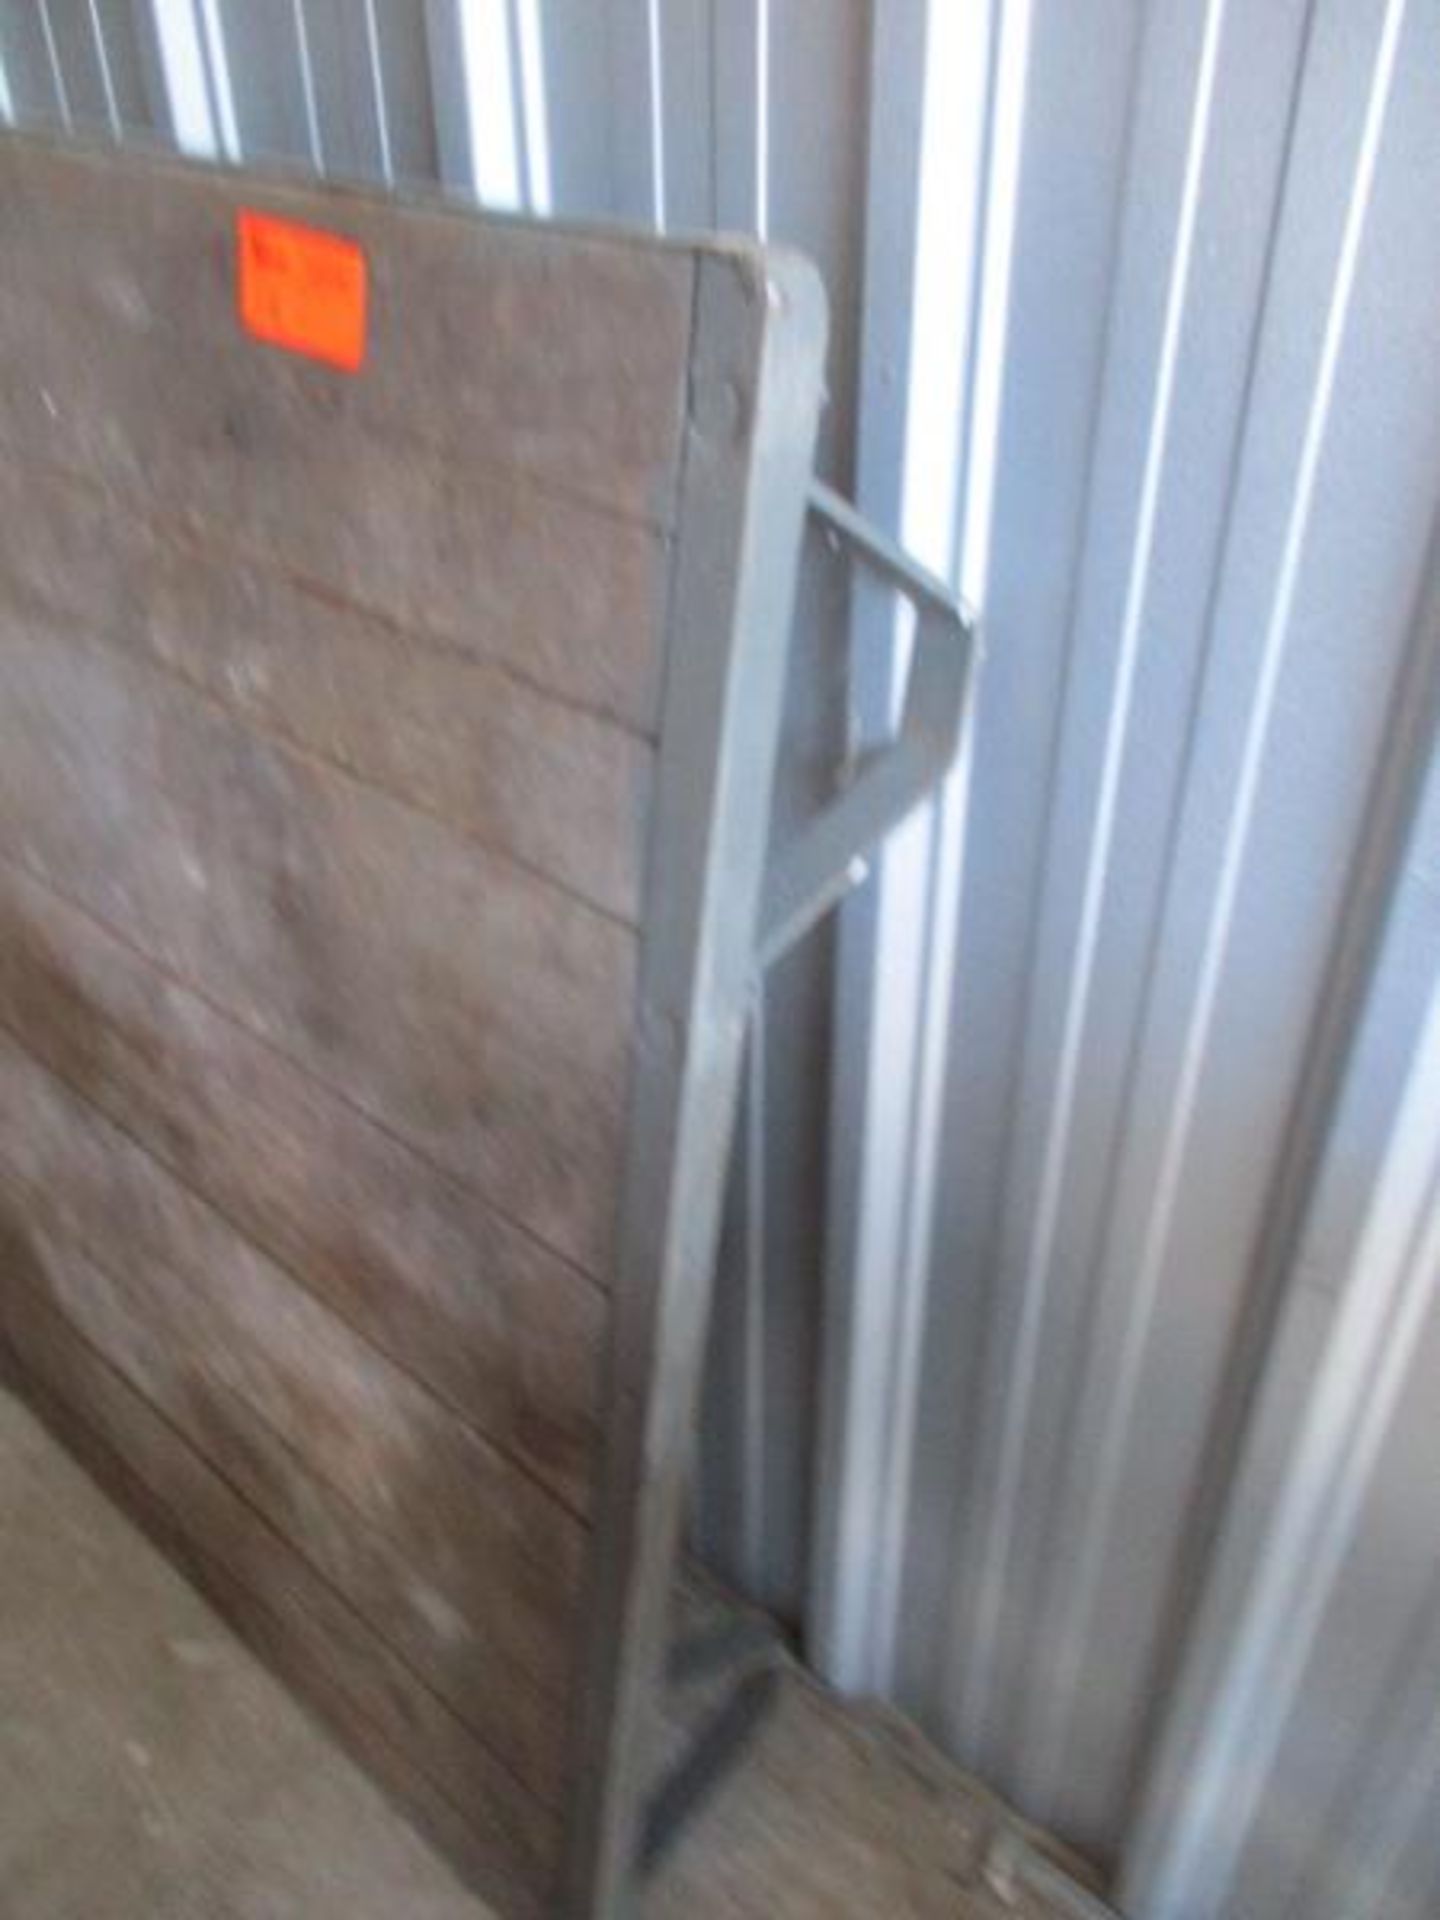 Metal Pallet, Wood Deck - Image 2 of 2